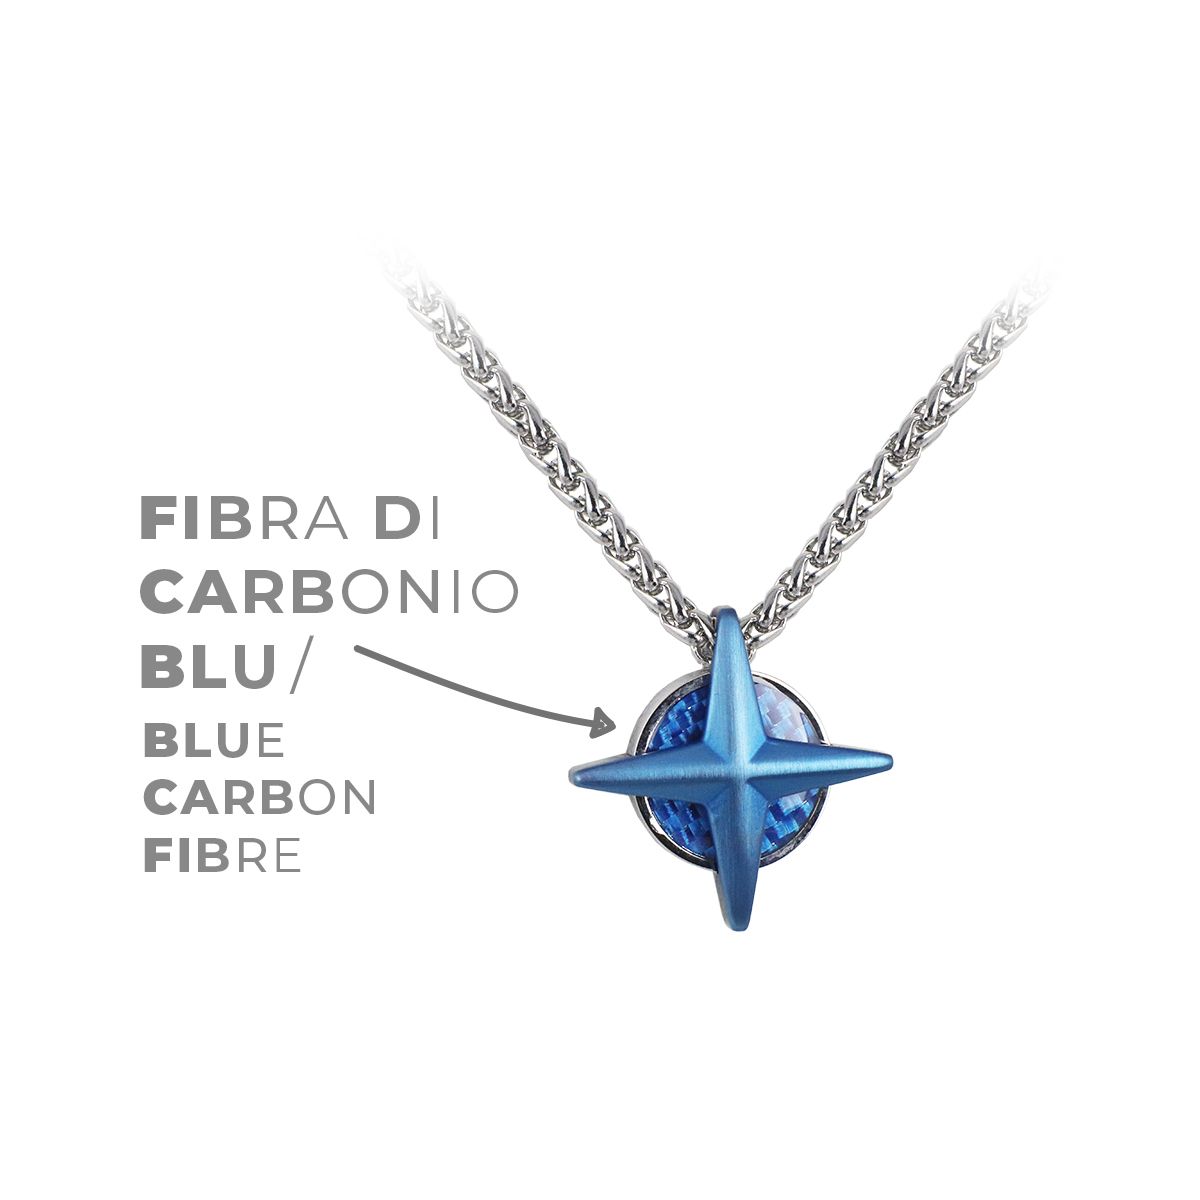 Fibra di carbonio blu - Blue carbon fibre